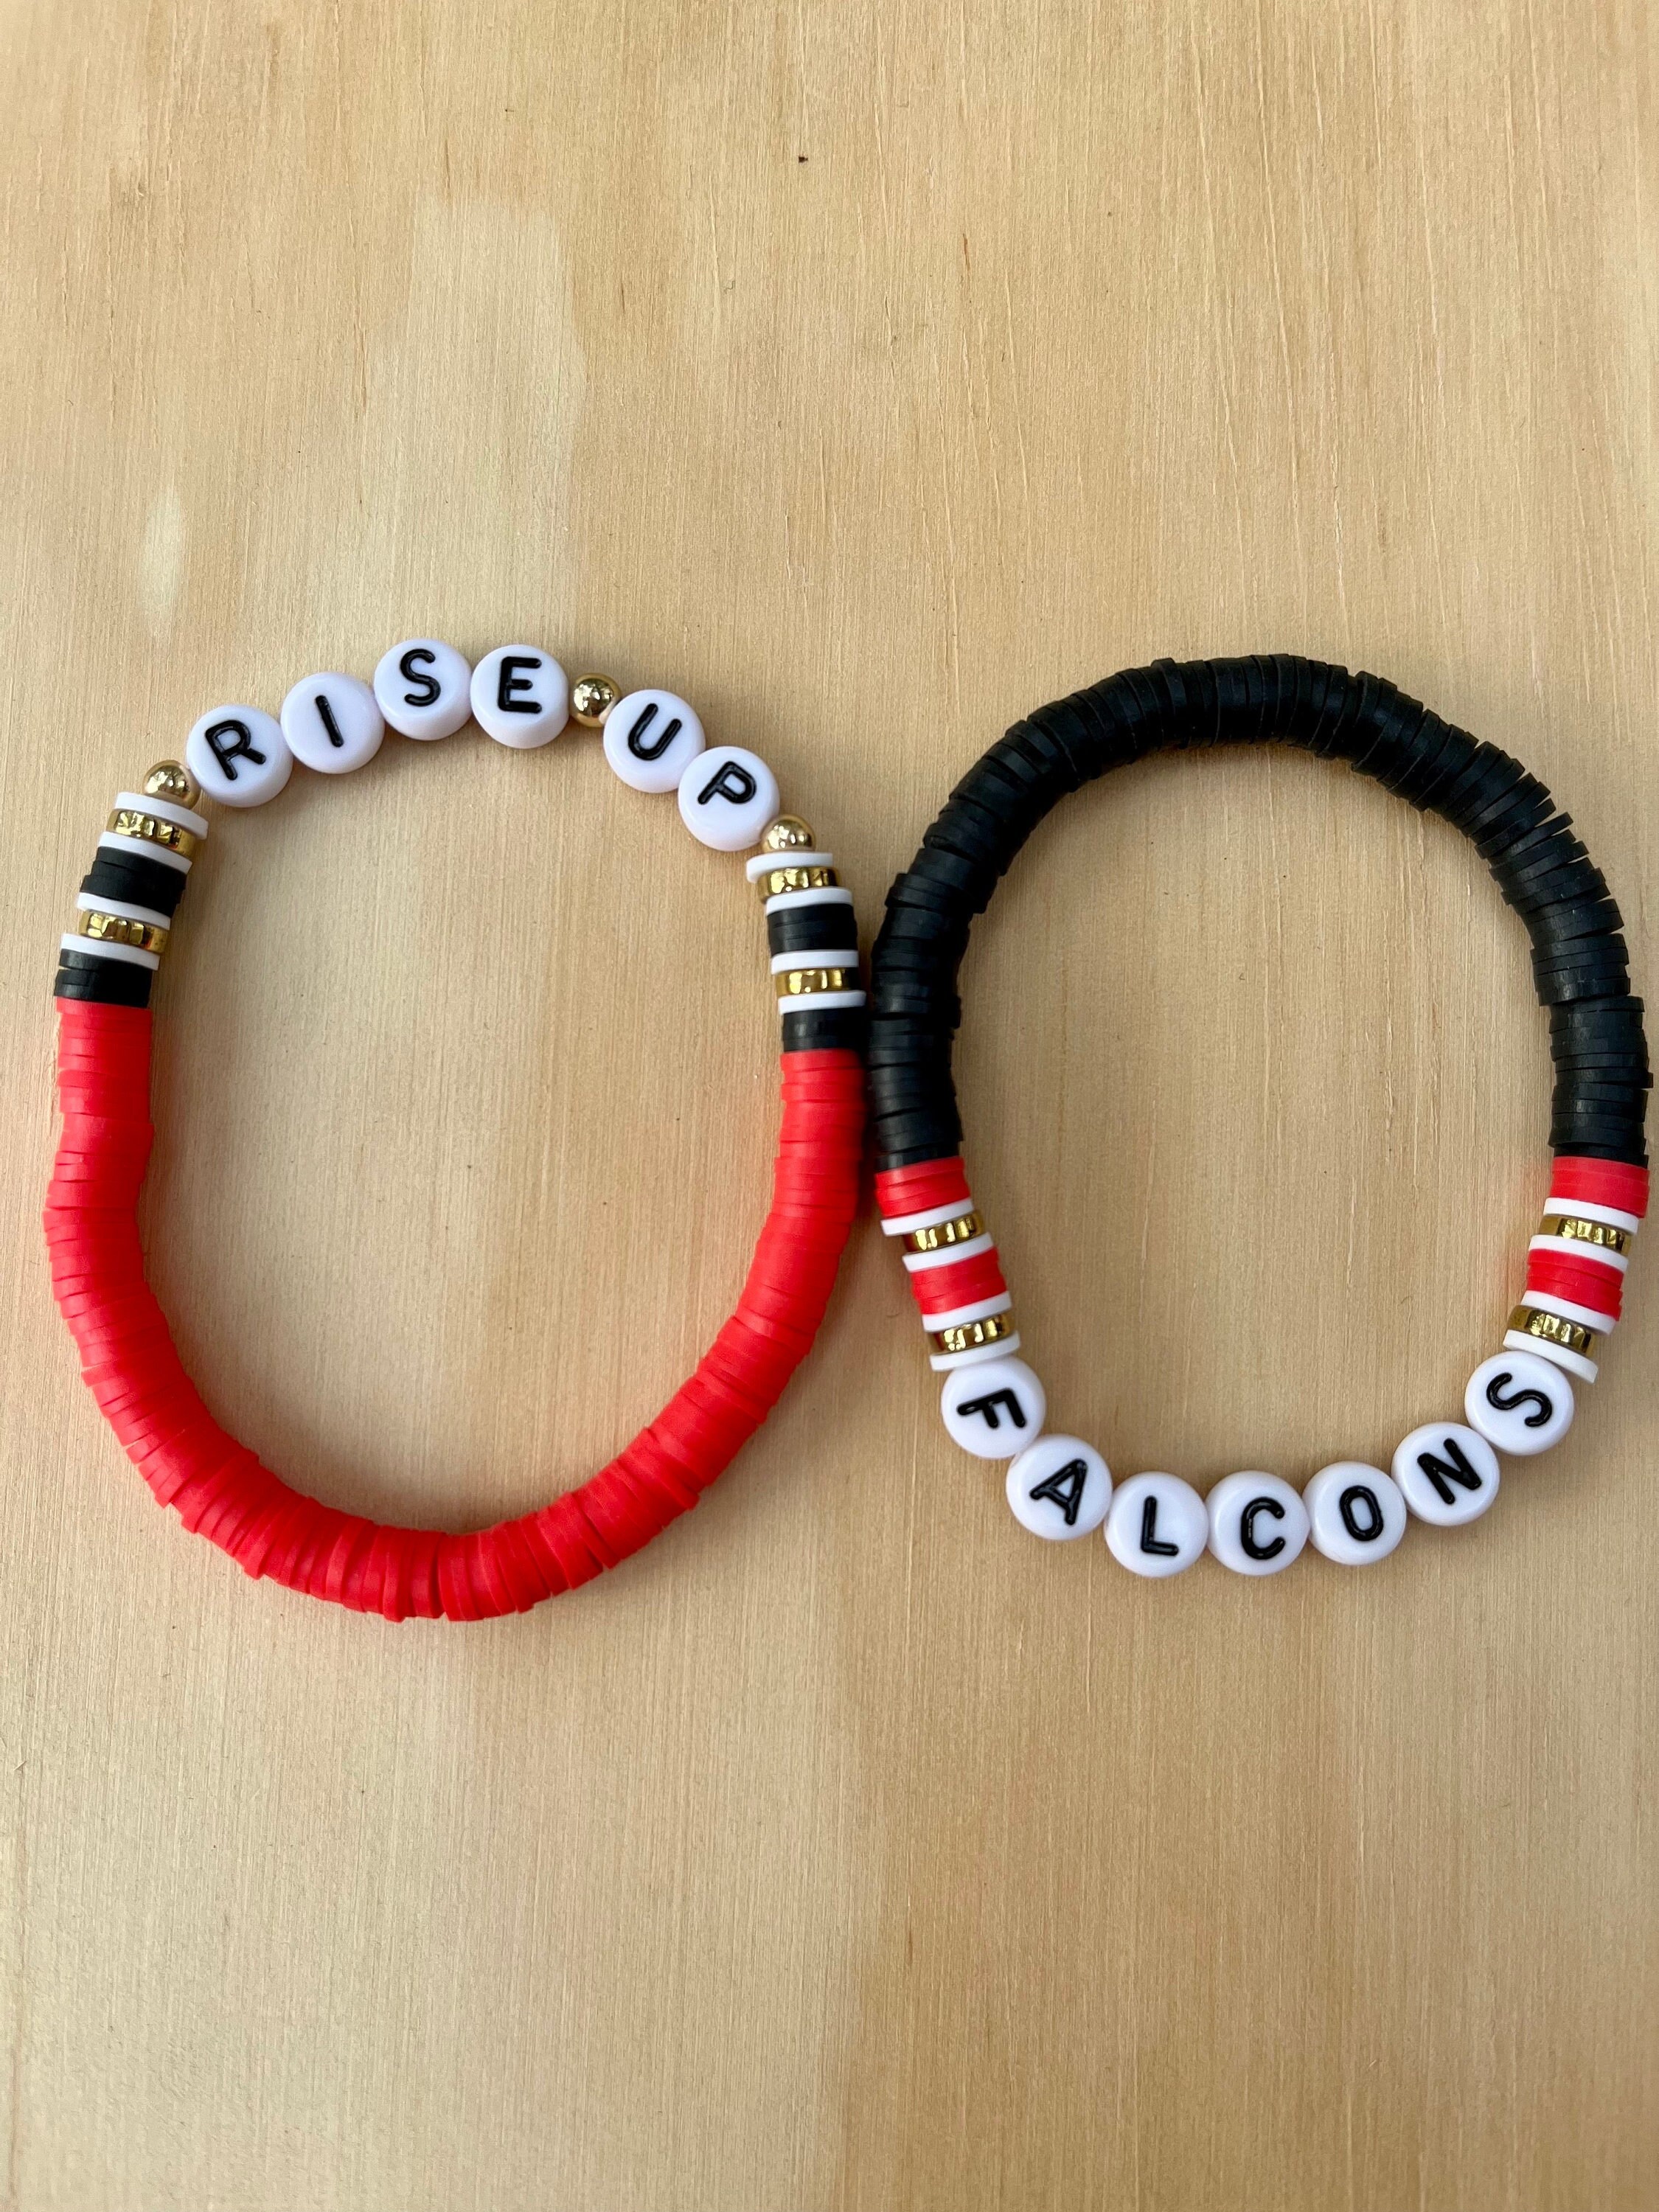 Silicone Focal Beads DIY Beadable Pens Atlanta Falcons 3 Pieces